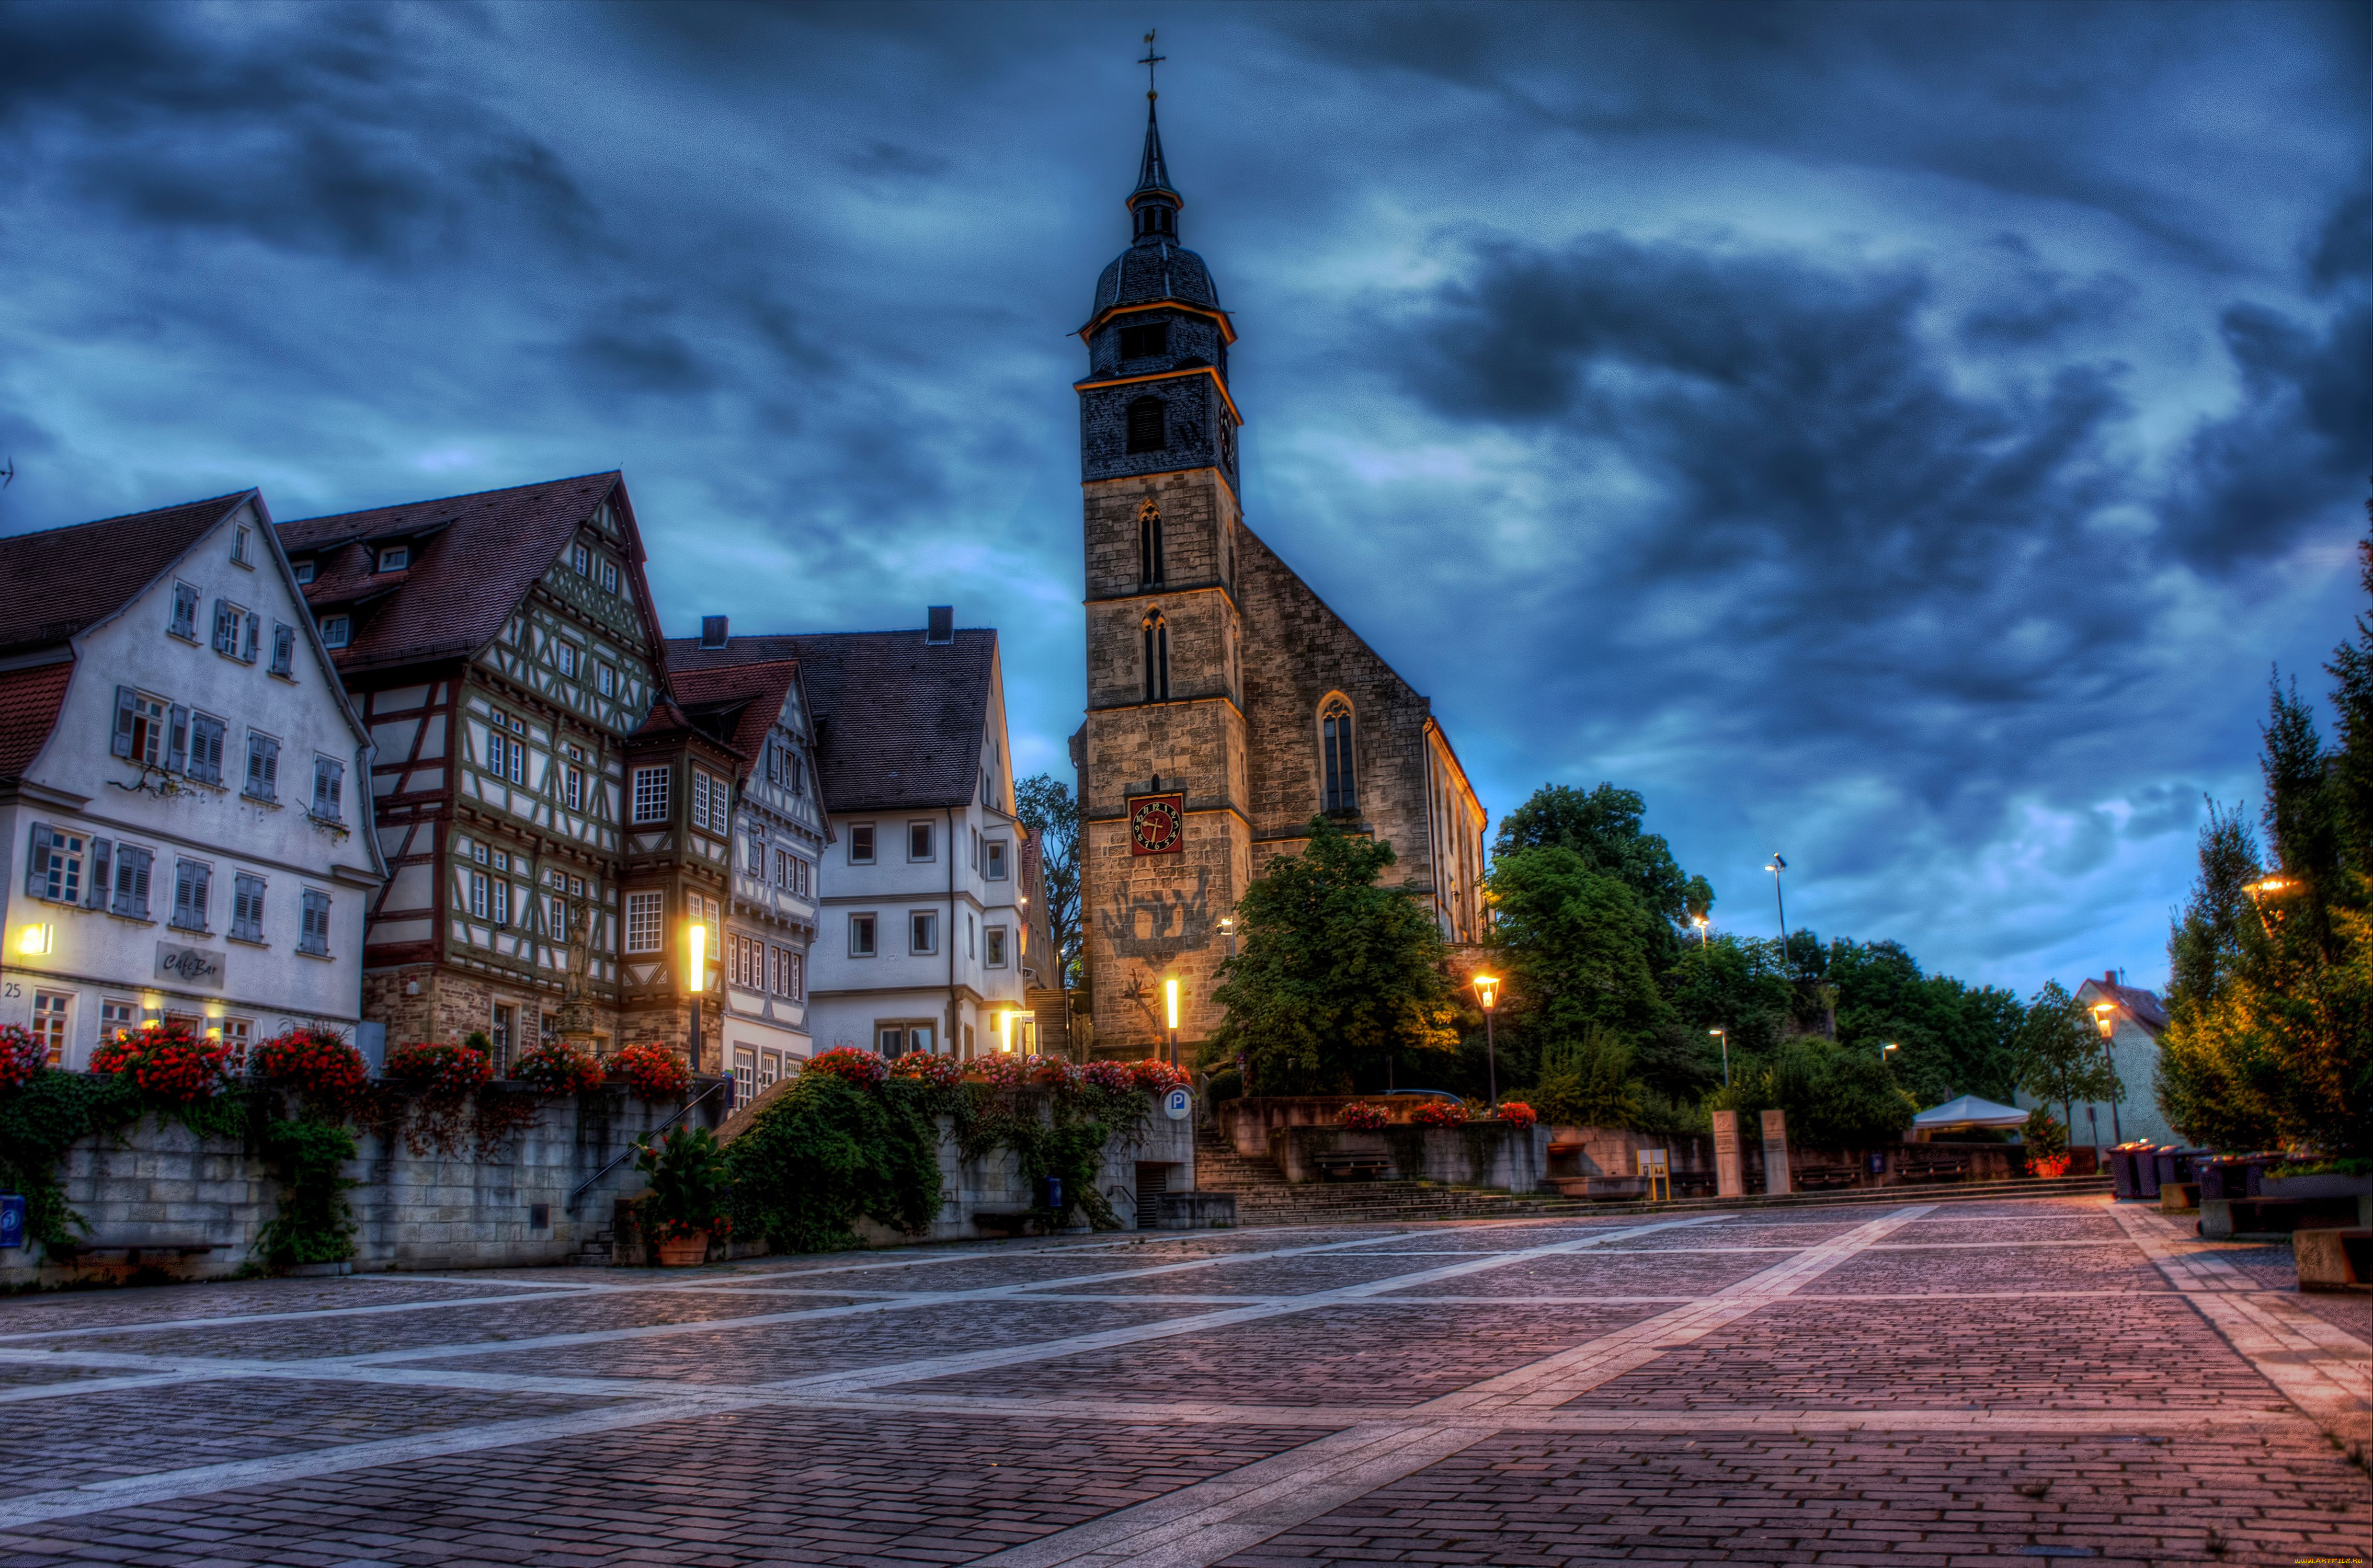 boeblingen, germany, города, улицы, площади, набережные, площадь, цветы, здания, церковь